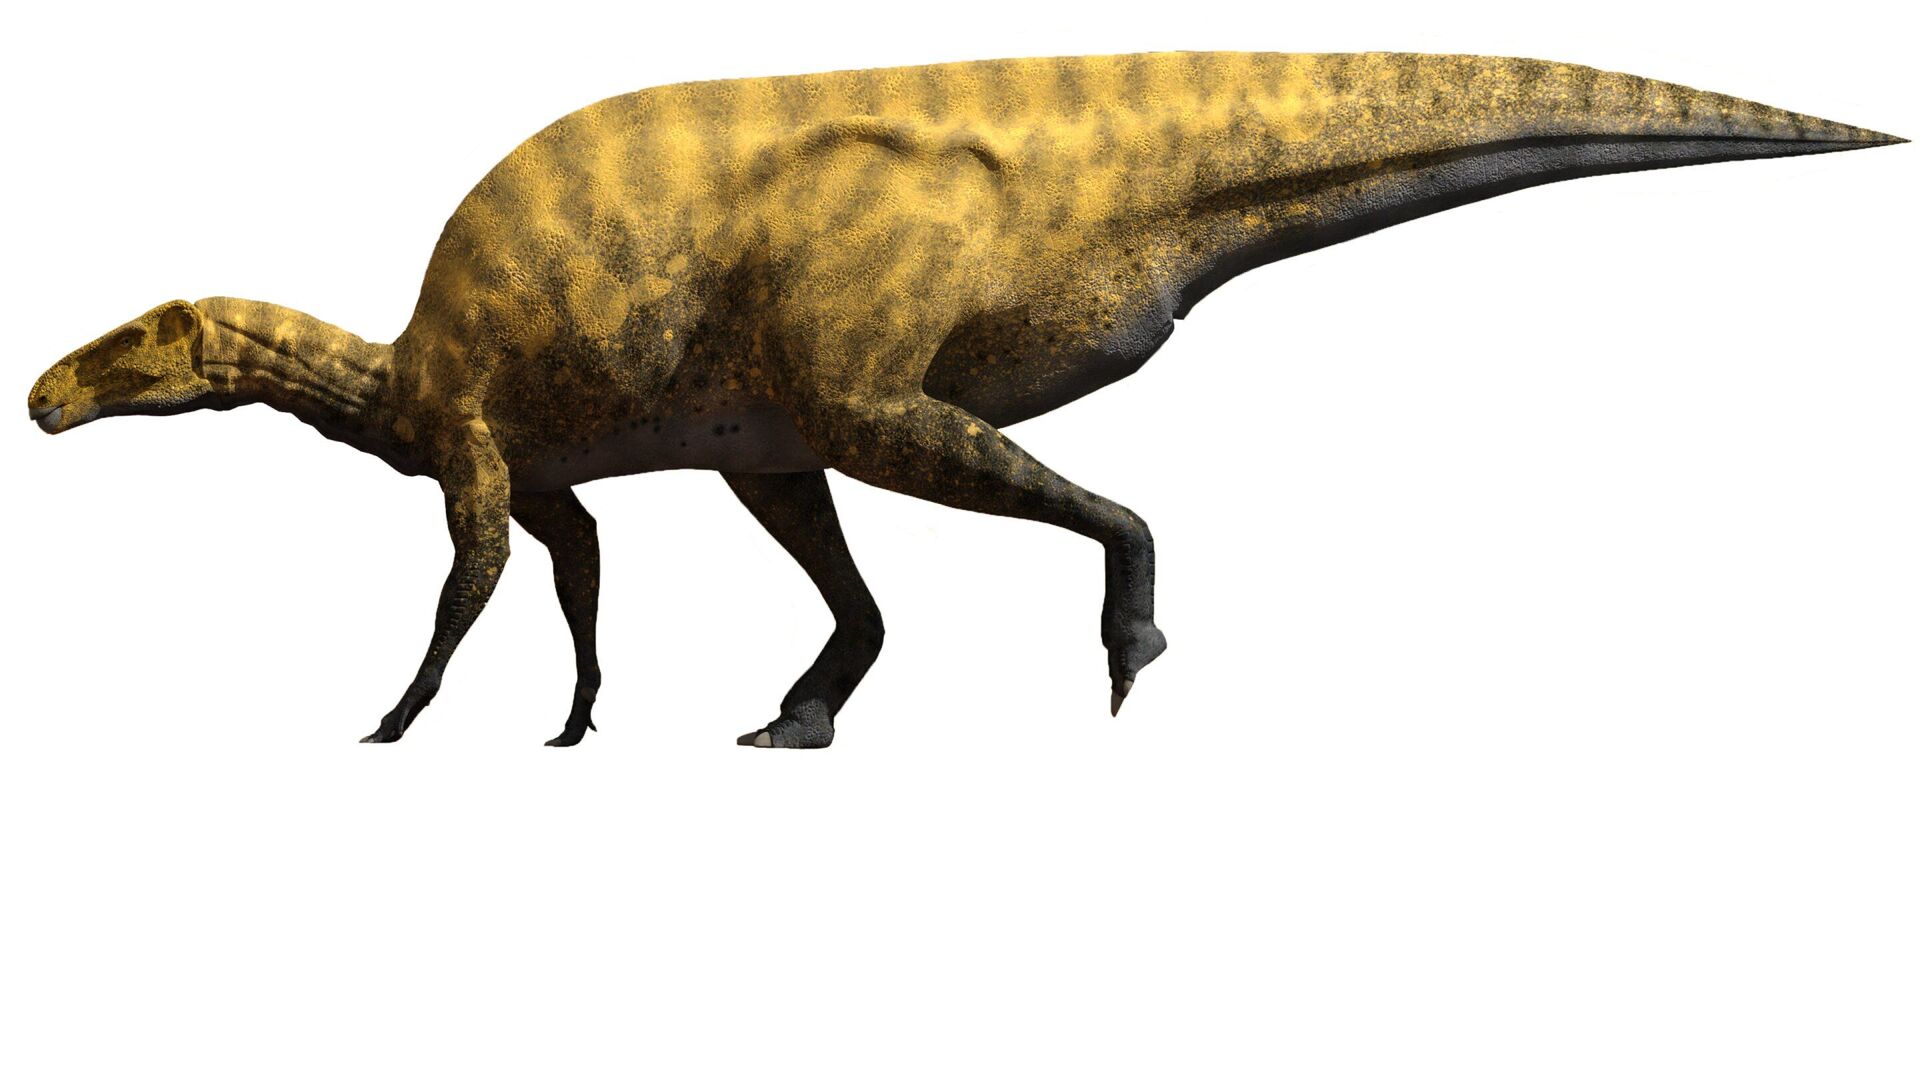 Descoberto novo dinossauro de 130 milhões de anos do tamanho de ônibus escolar na Espanha (FOTO) - Sputnik Brasil, 1920, 08.07.2021